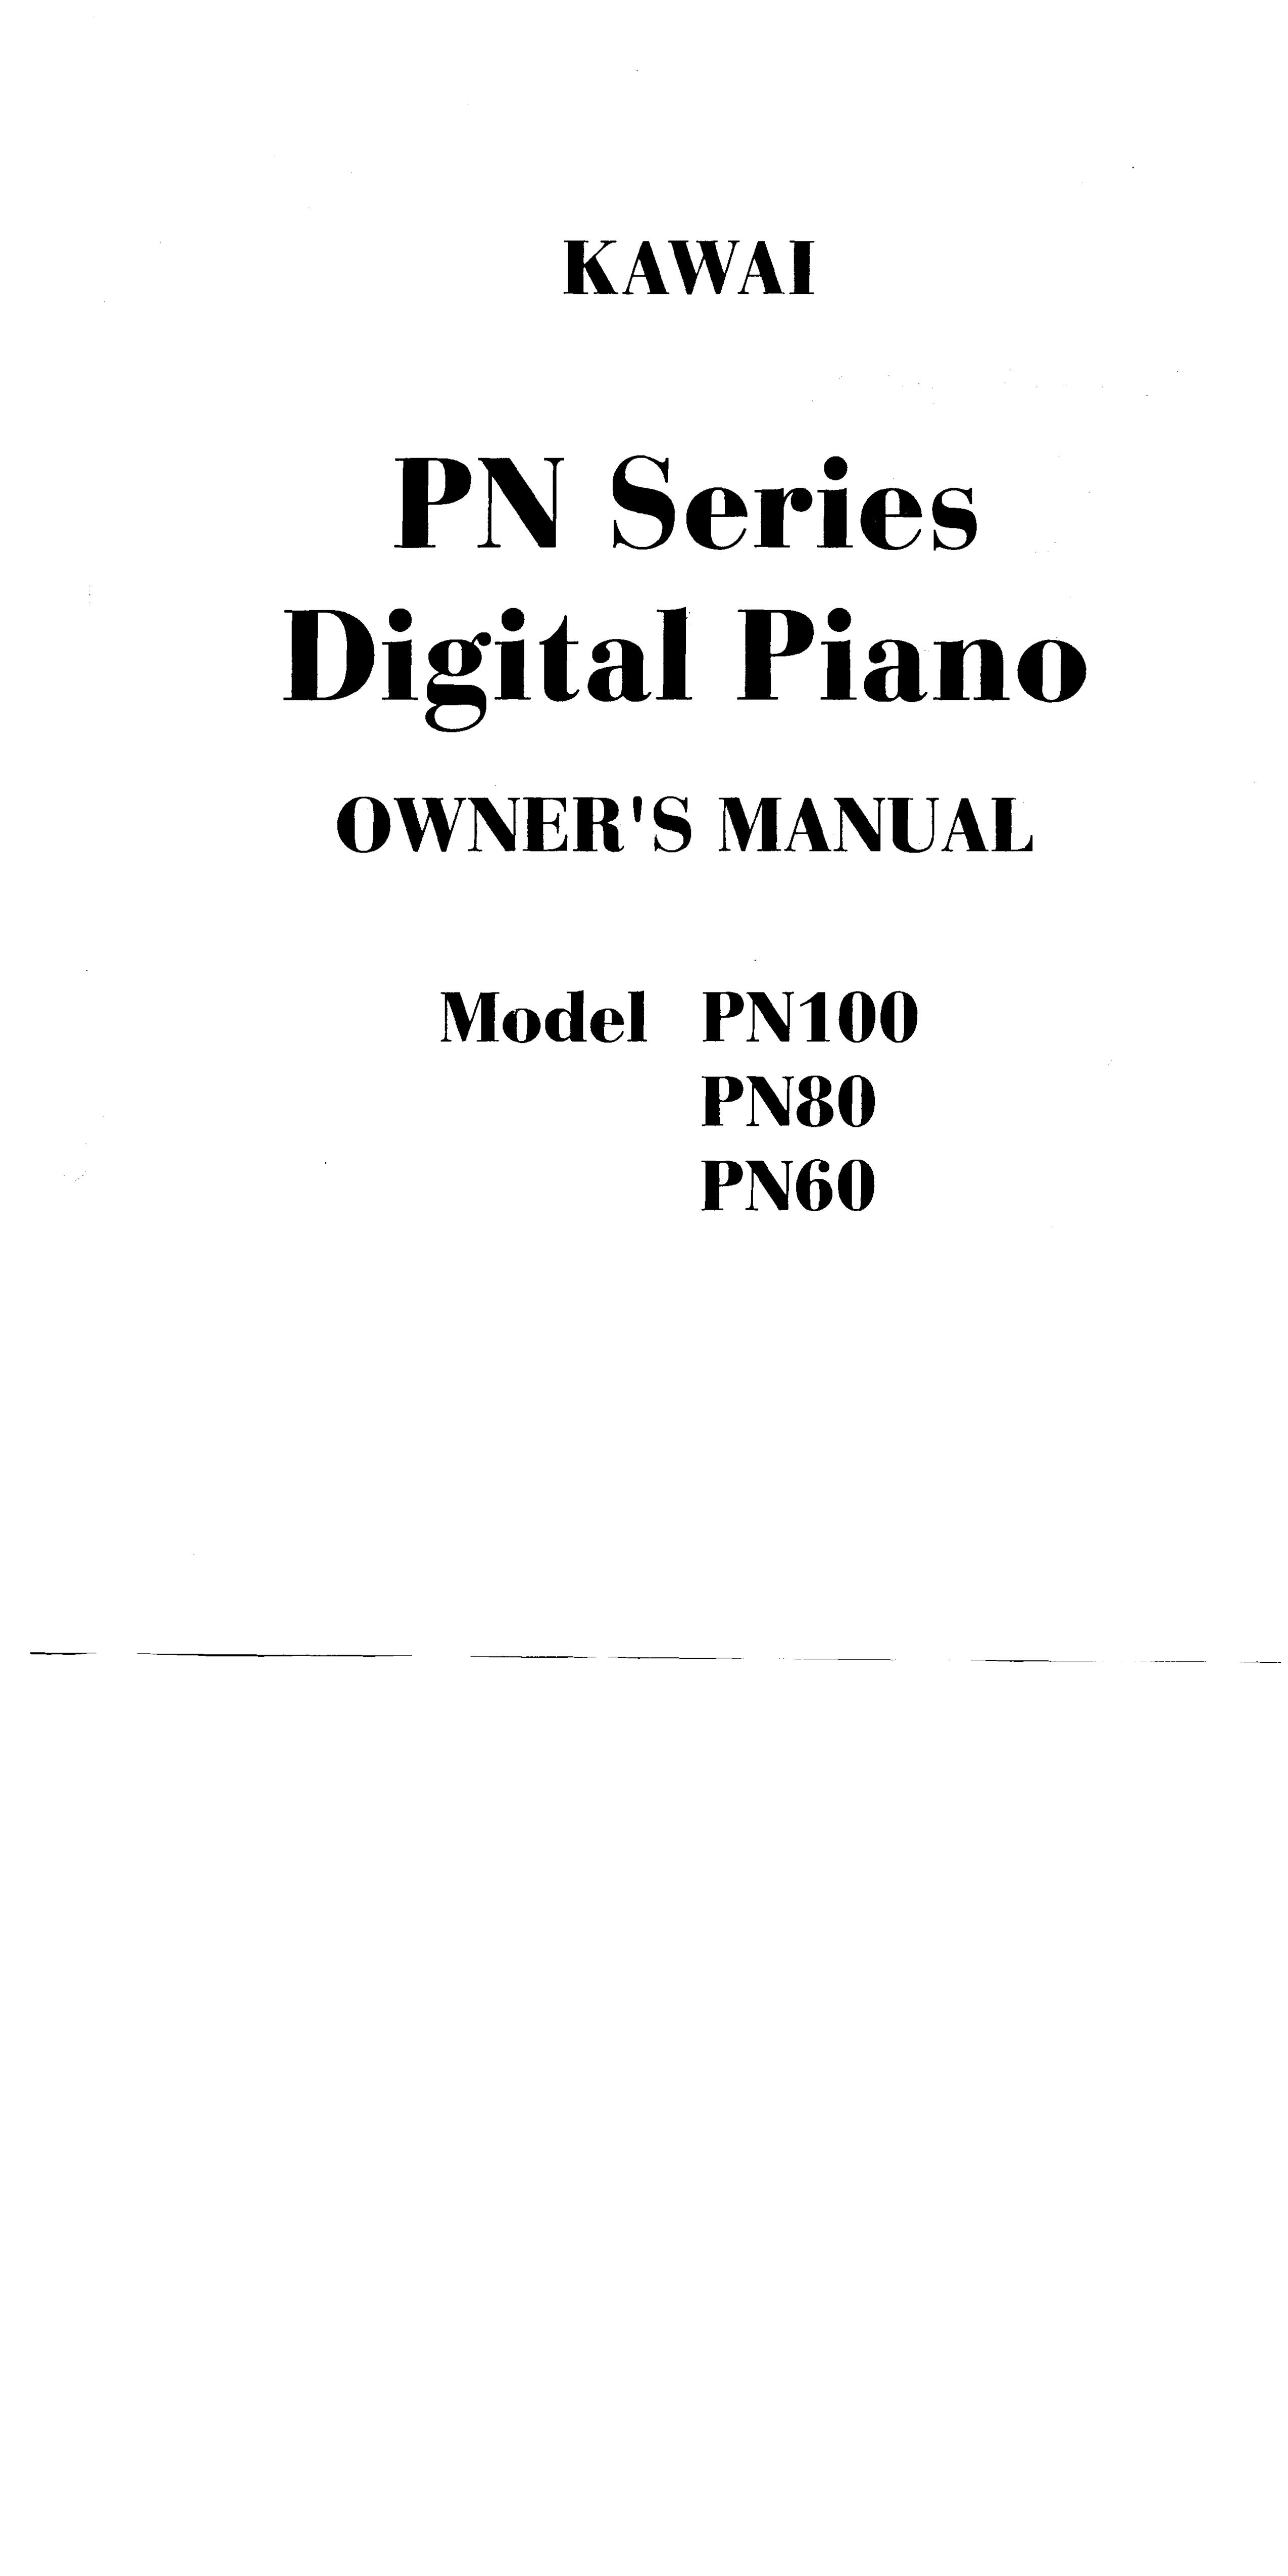 Kawai PN60 Electronic Keyboard User Manual